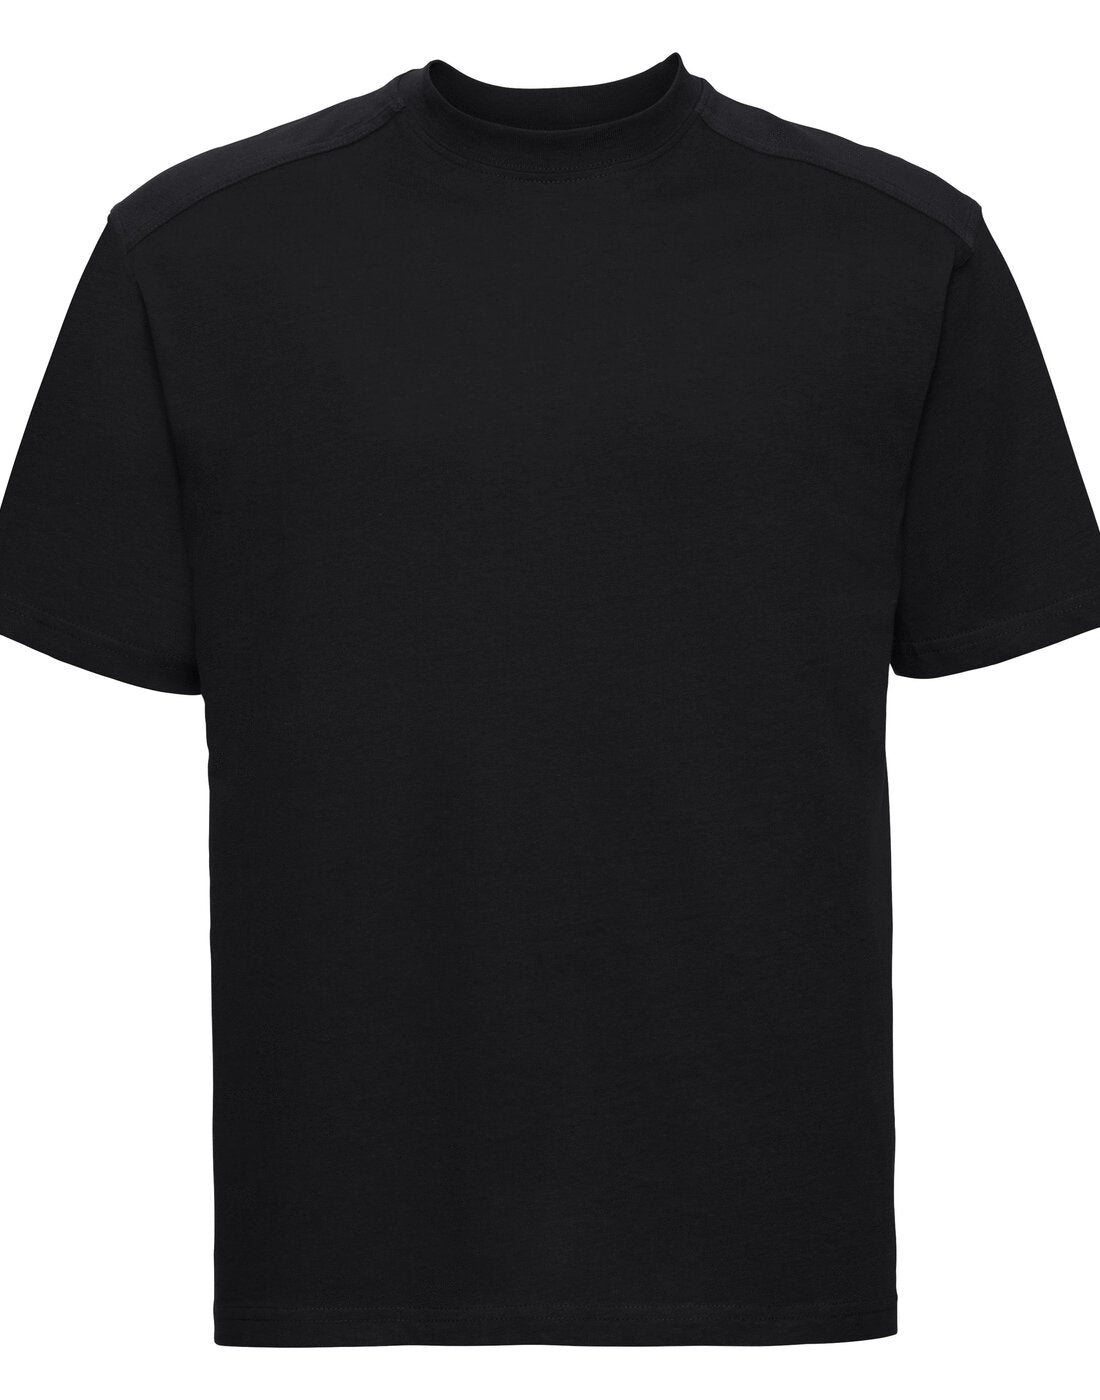 Russell Heavy Duty Workwear T-Shirt - Black